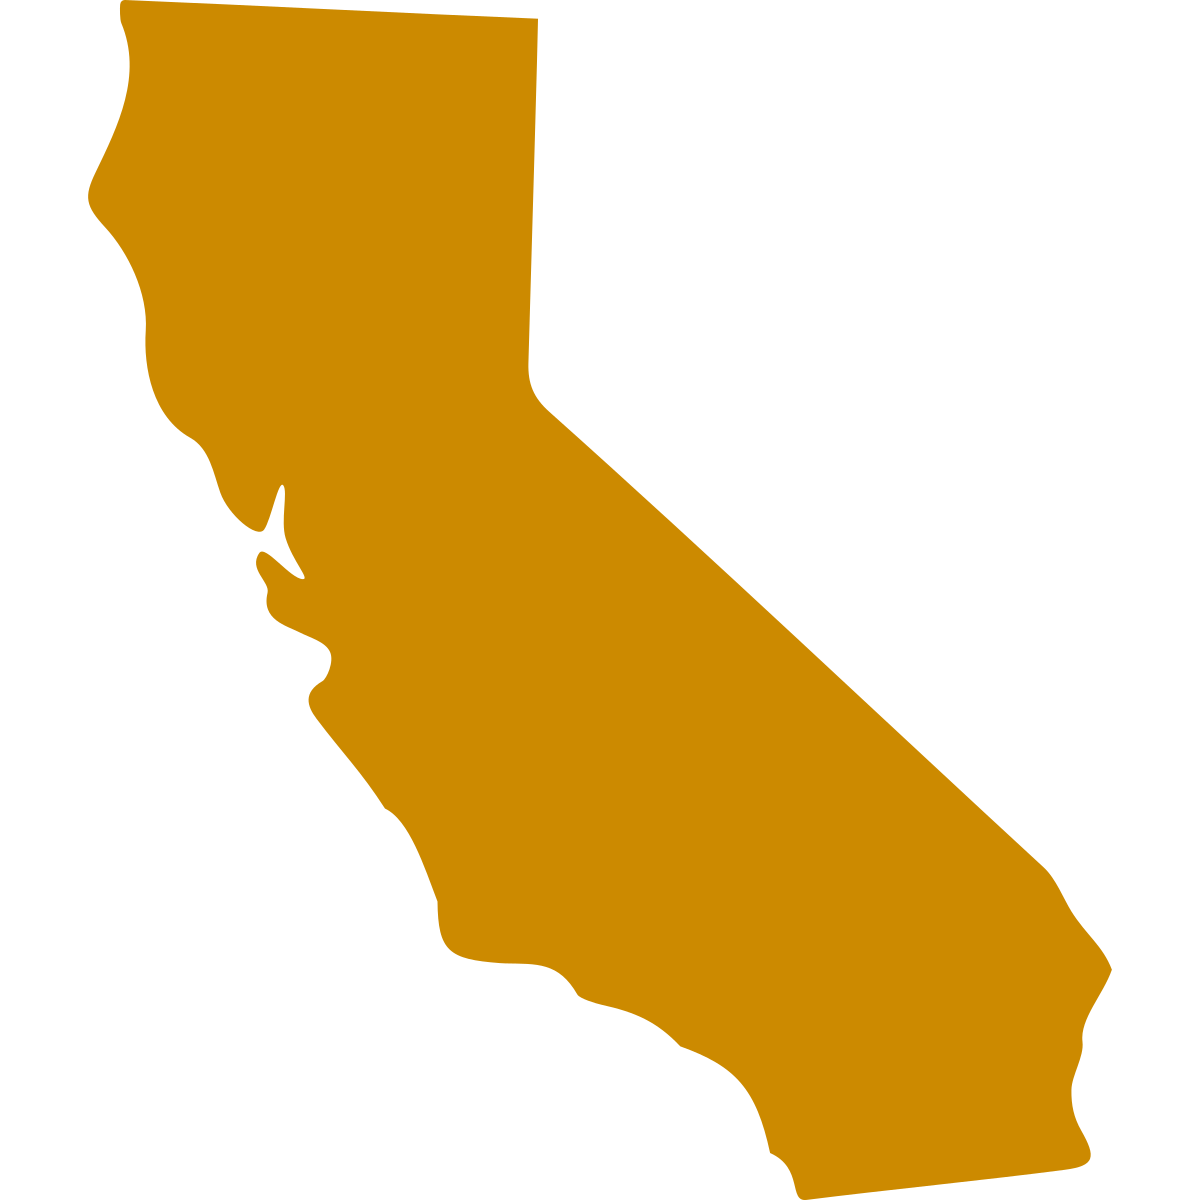 California icon in turmeric